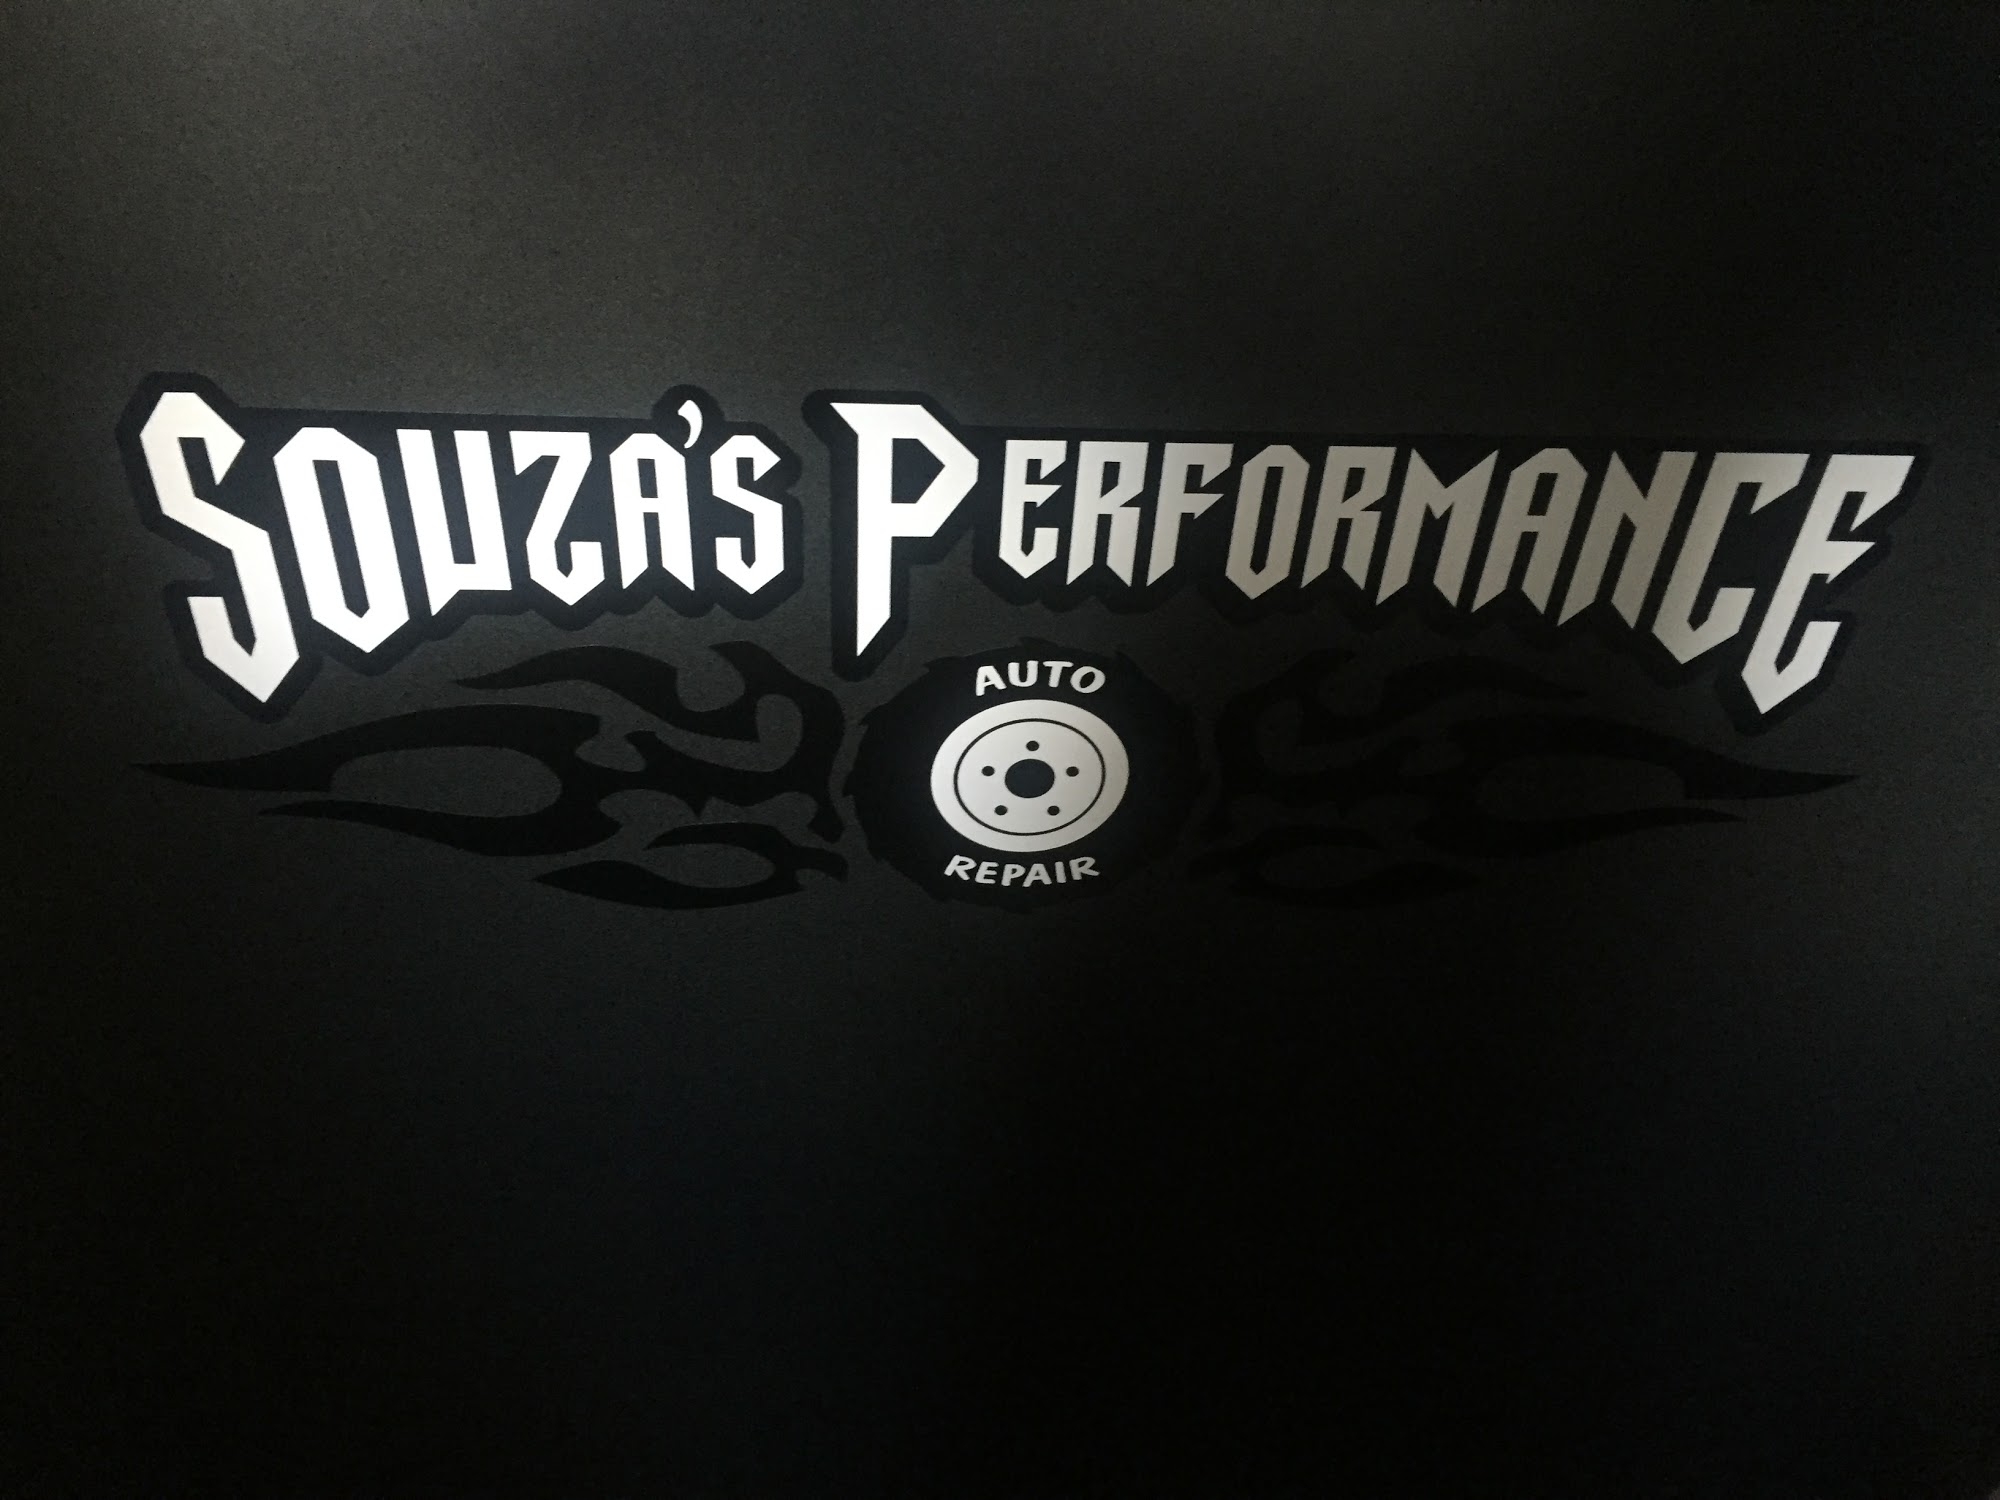 Souza's Performance